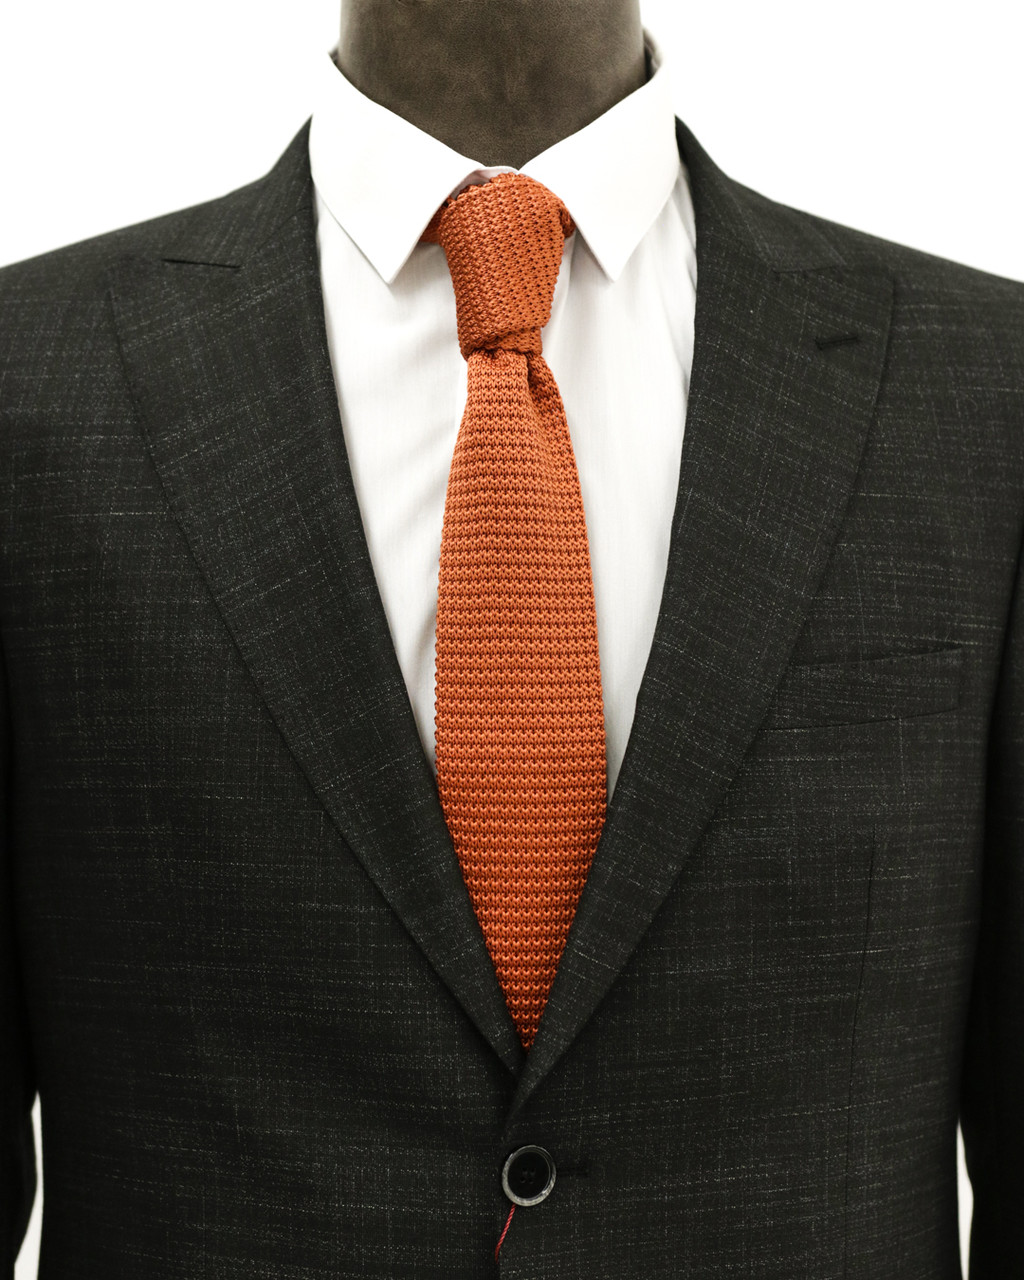 Мужской галстук «UM&H jrs18» оранжевый (полиэстер), фото 1